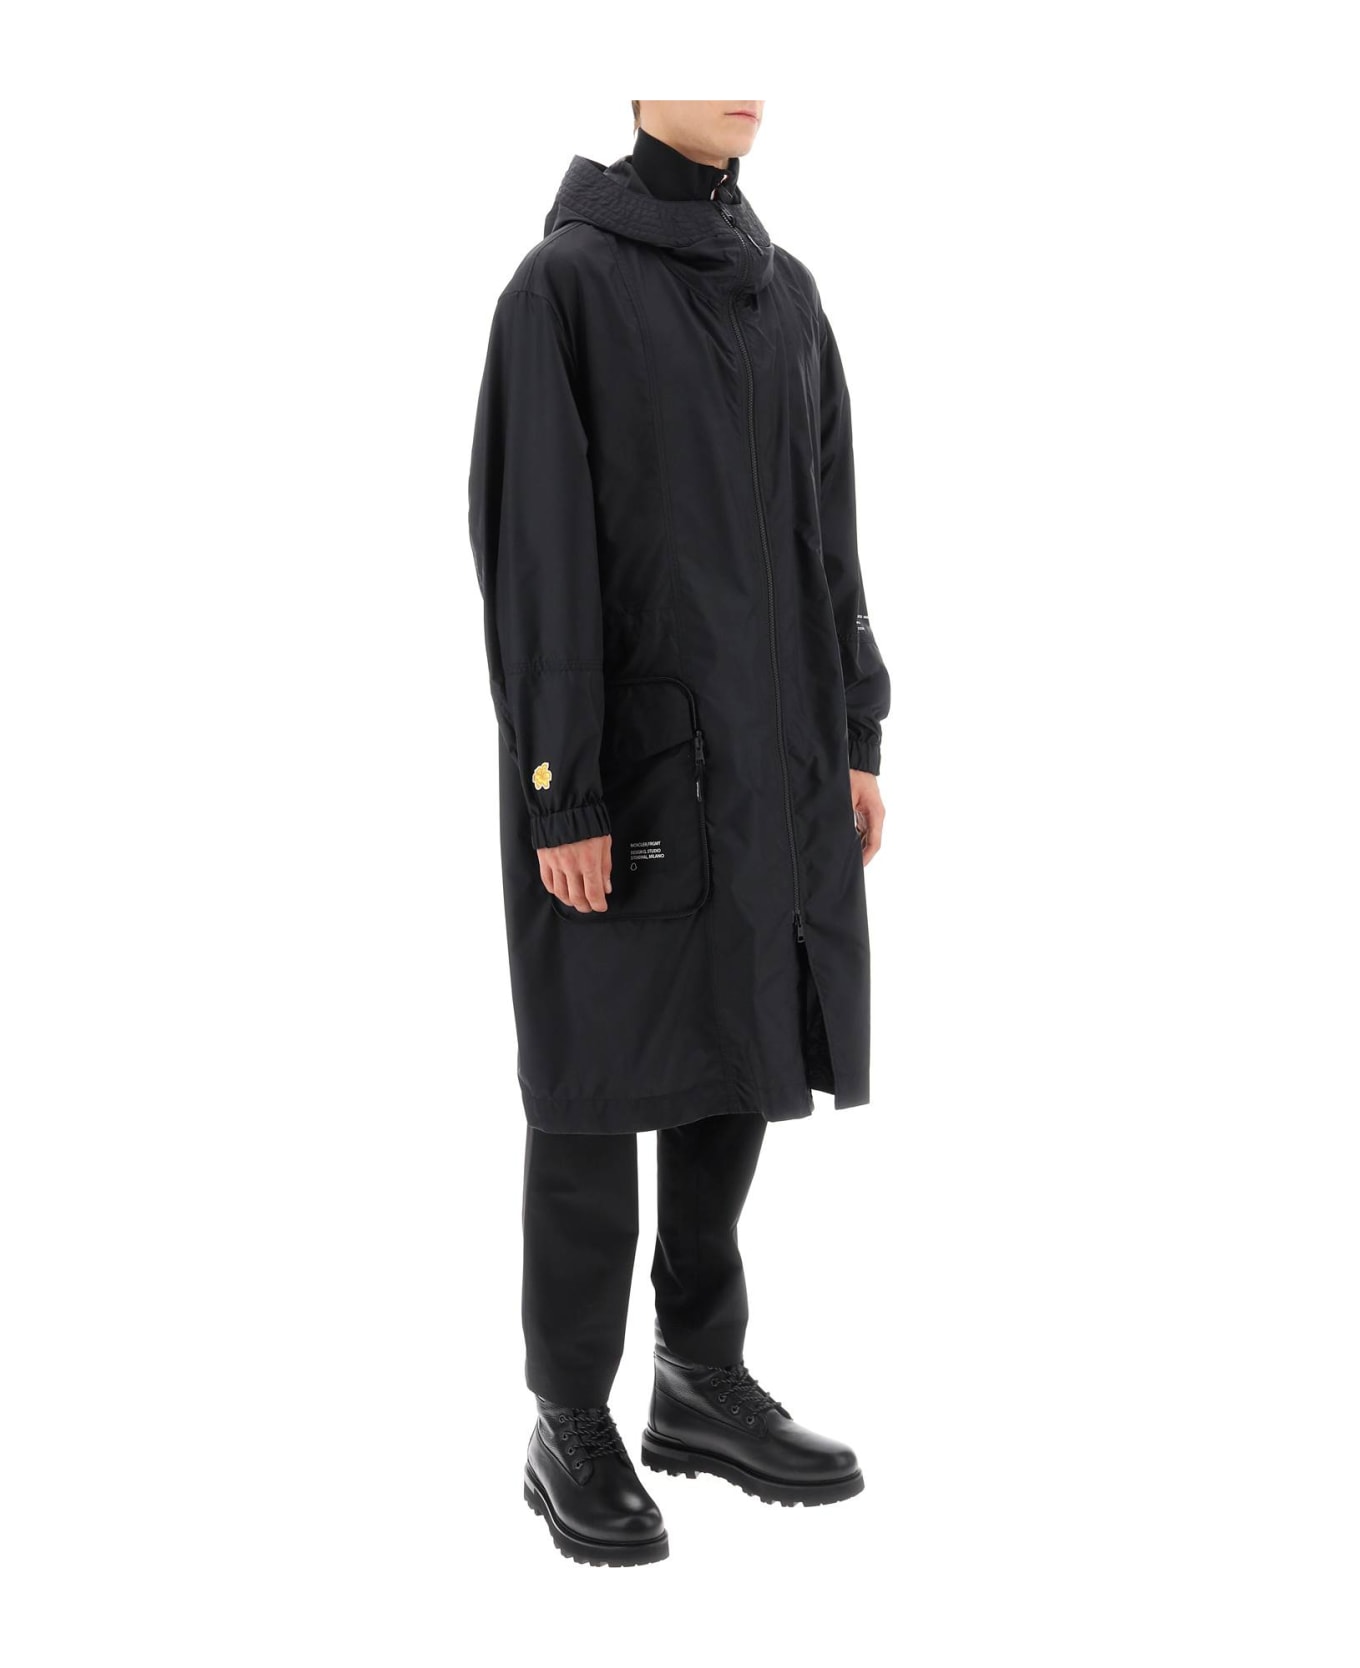 Moncler Genius Moncler X Frgmt - Fennel Technical Fabric Parka - Black コート